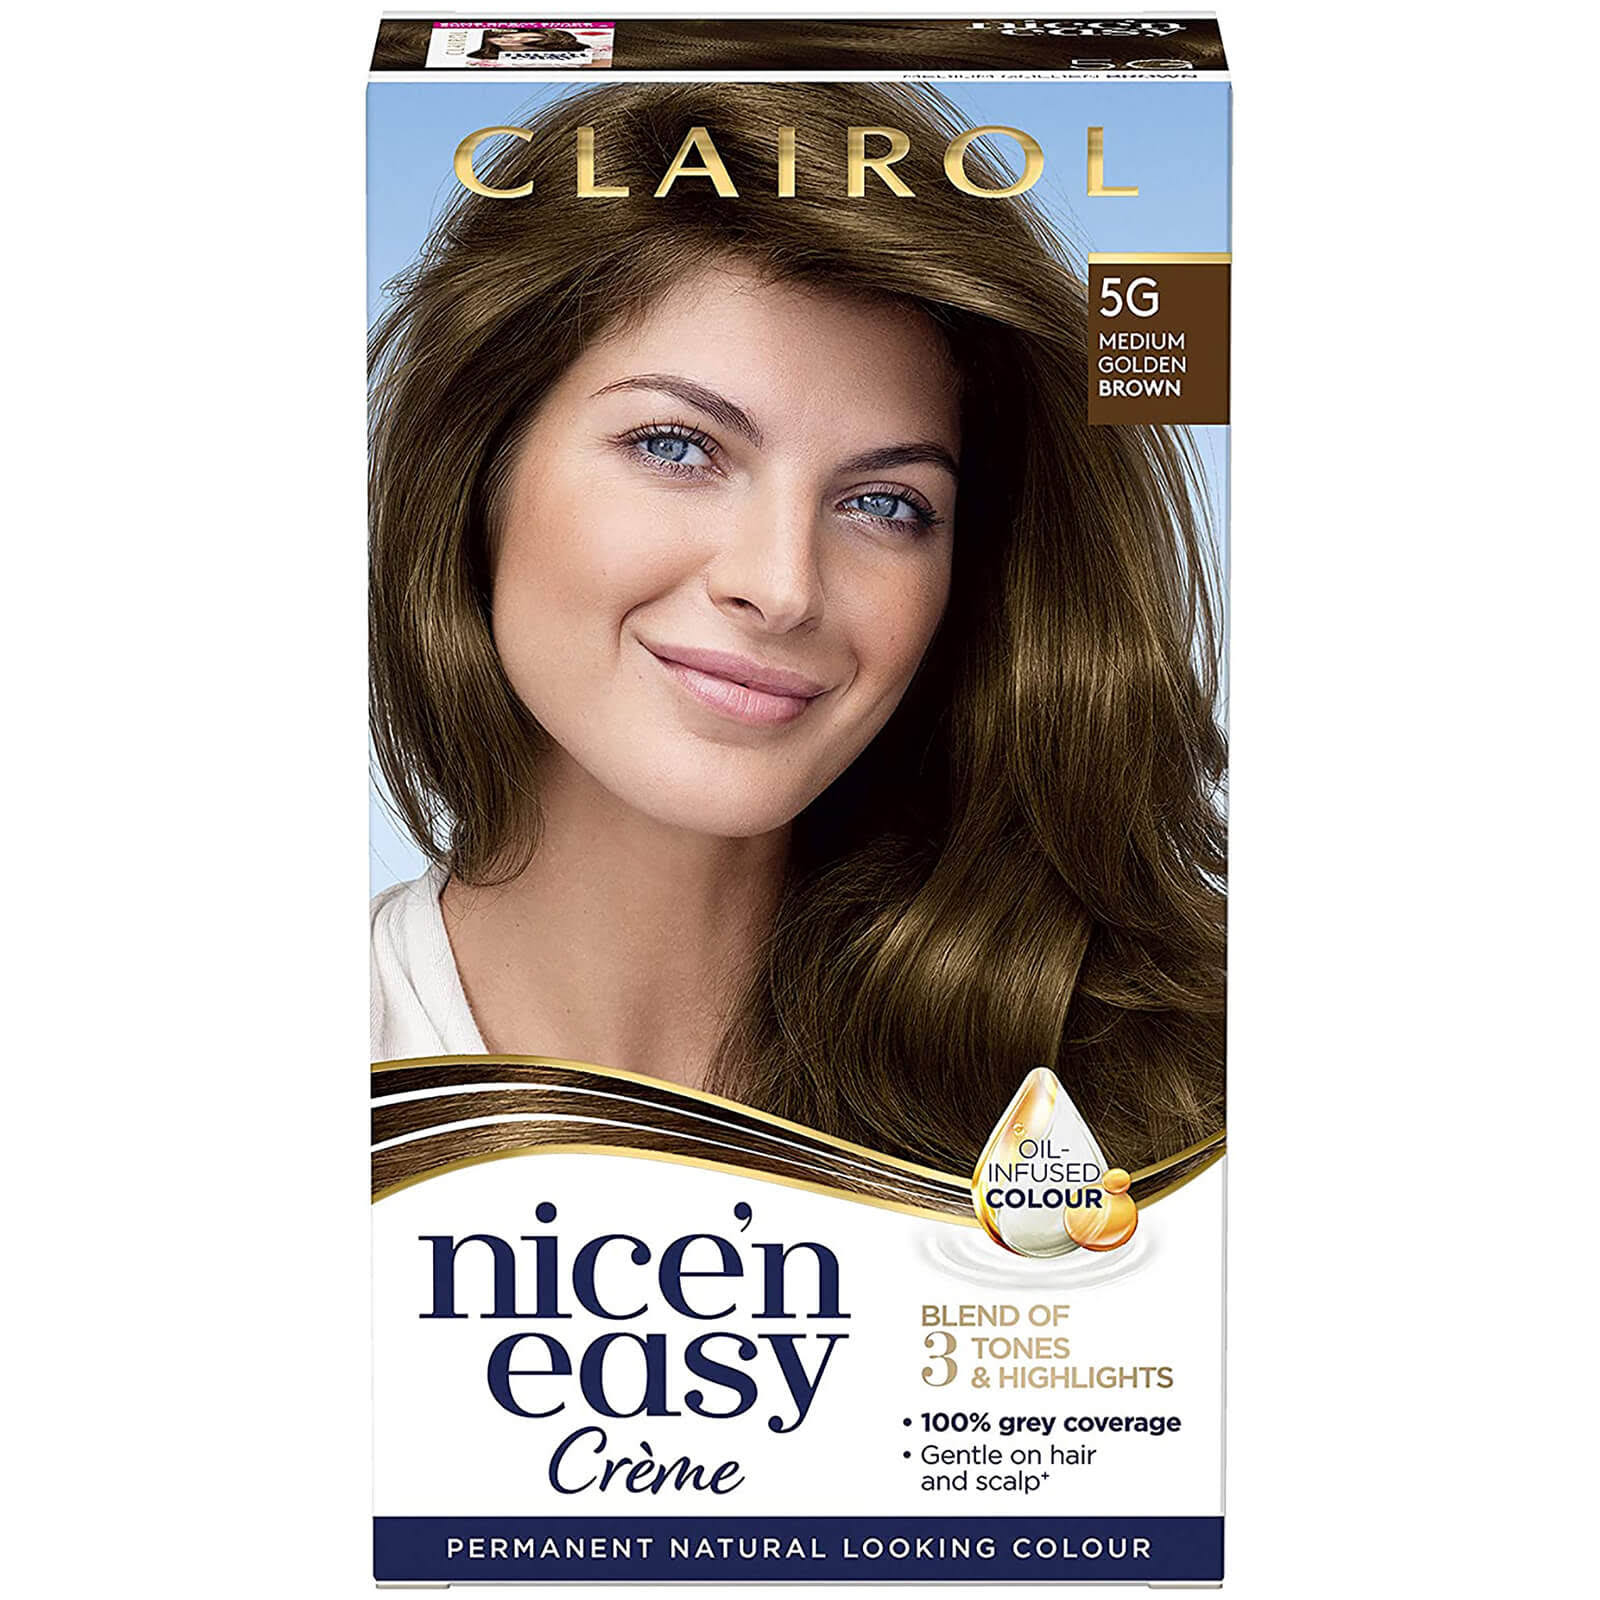 Clairol Nice'n Easy Permanent Hair Dye - 5g Medium Golden Brown